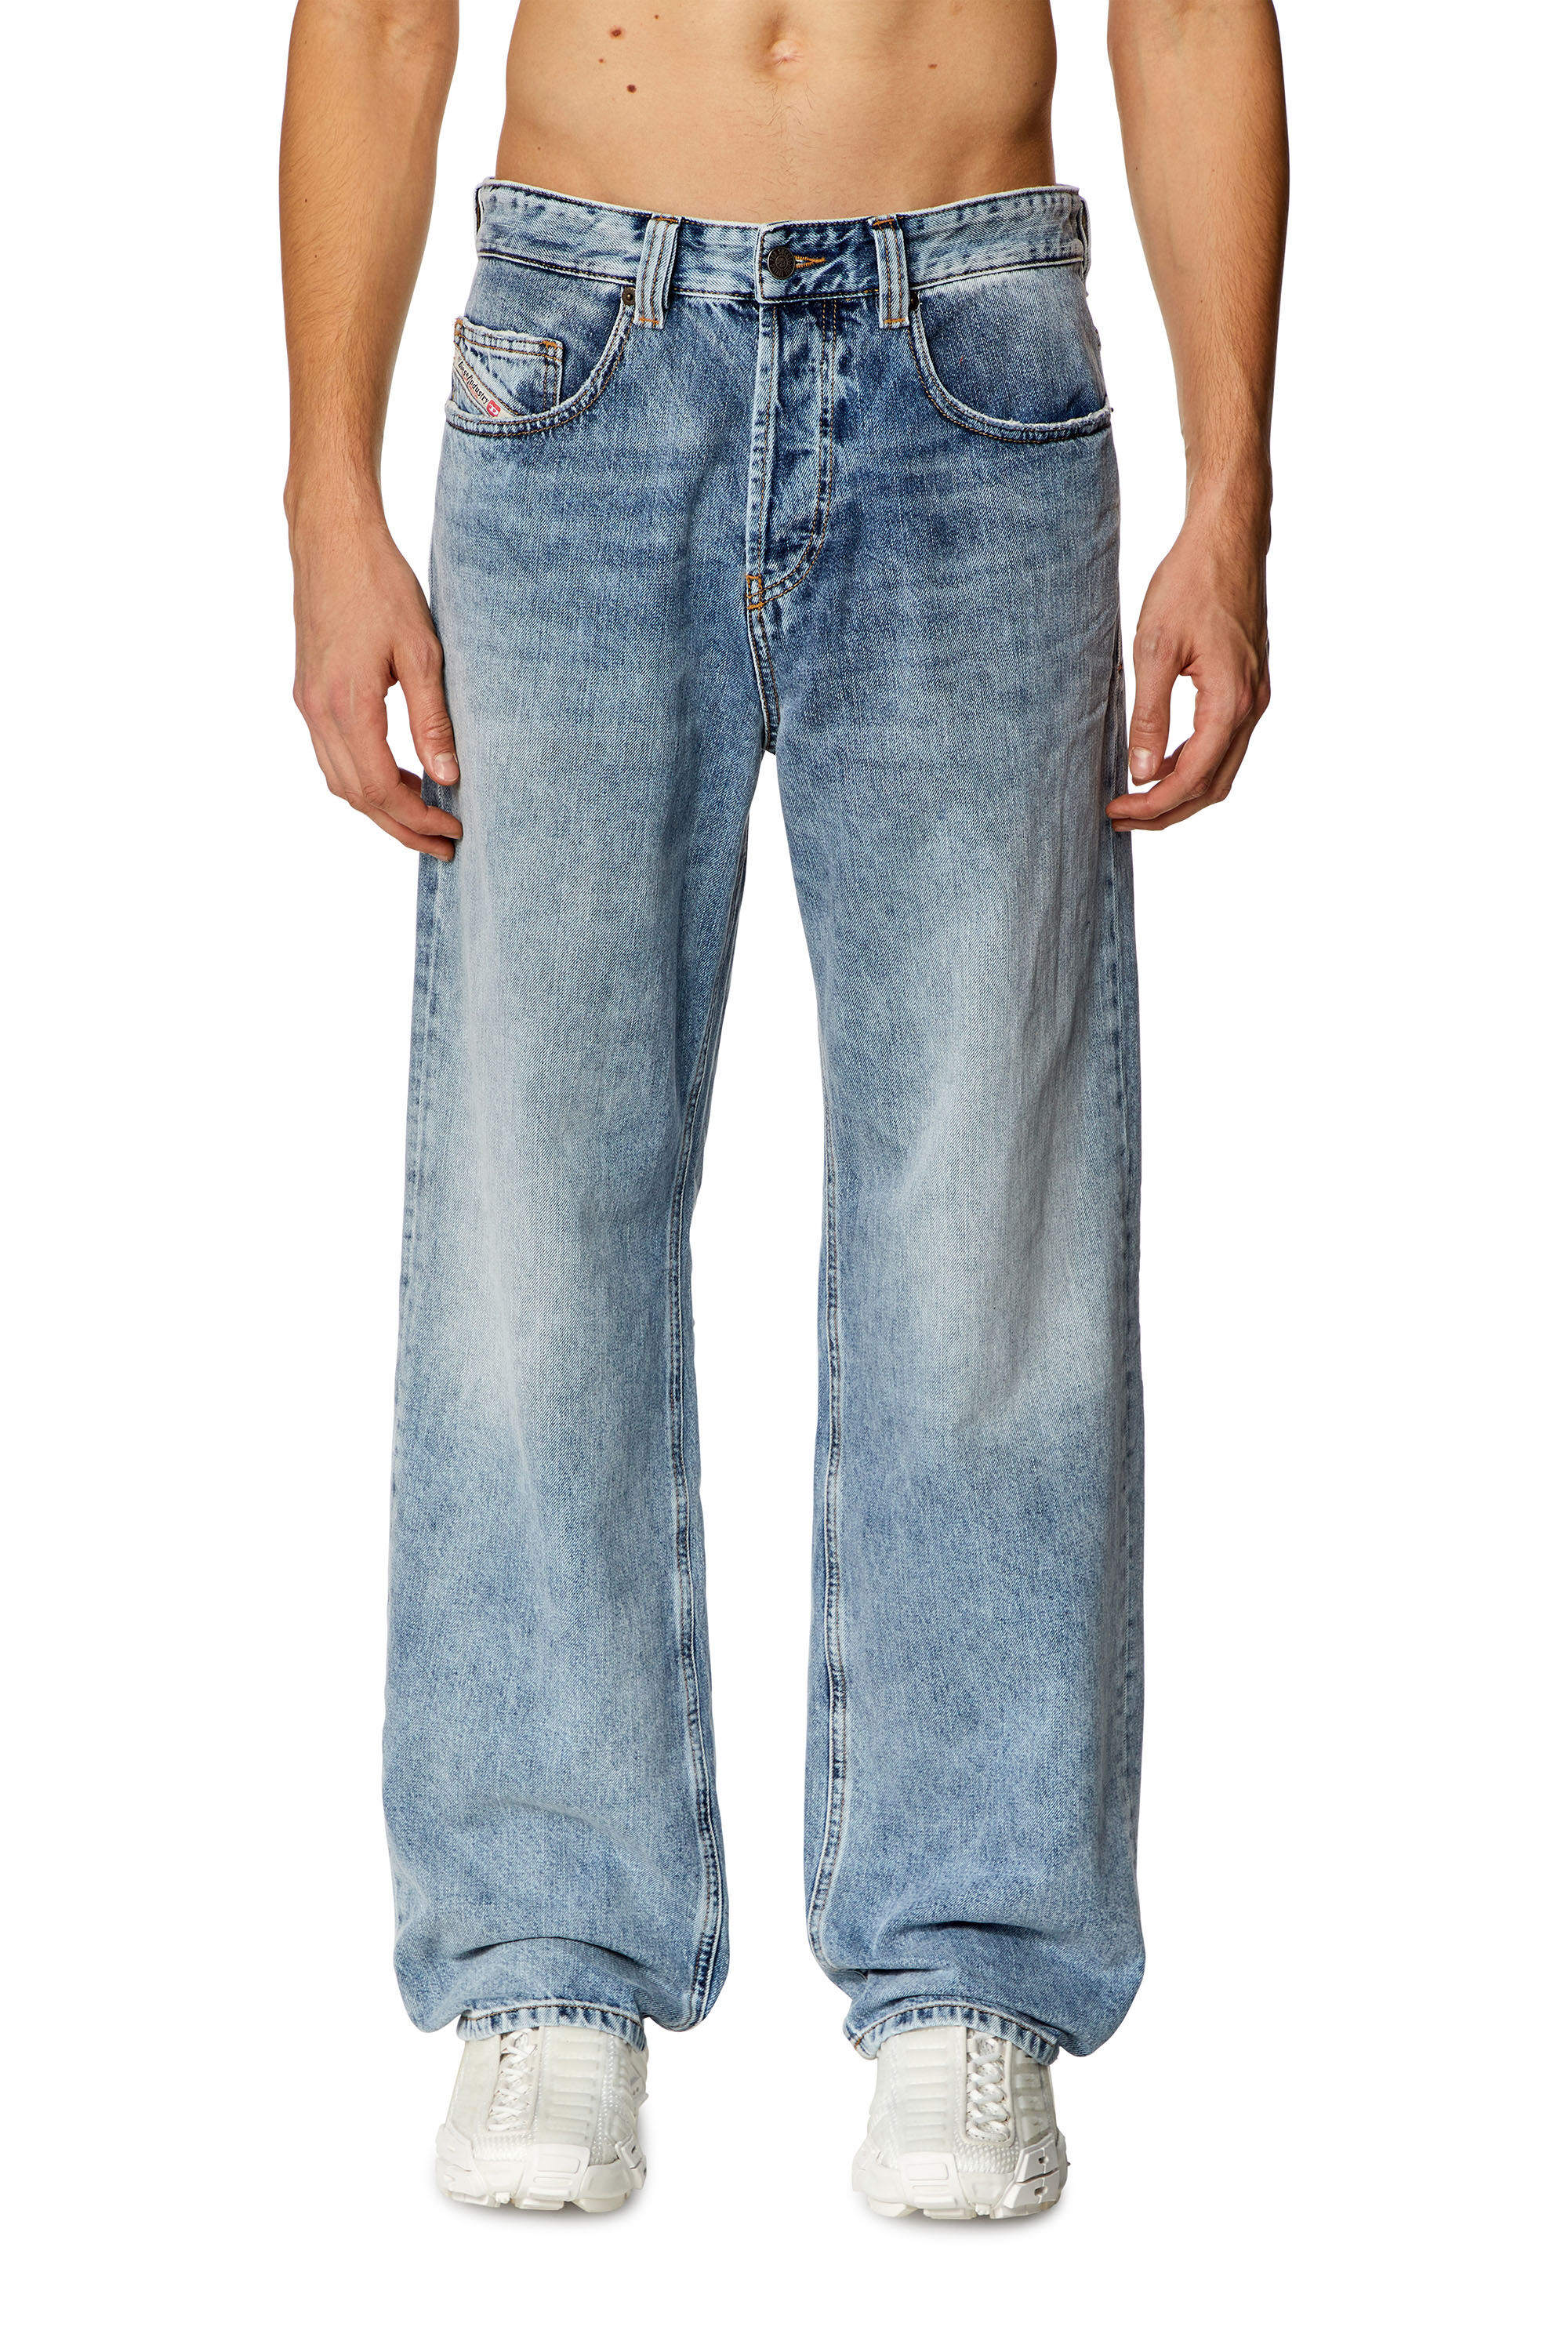 Men's Oversized Straight Jeans | Light blue | Diesel 2001 D-Macro